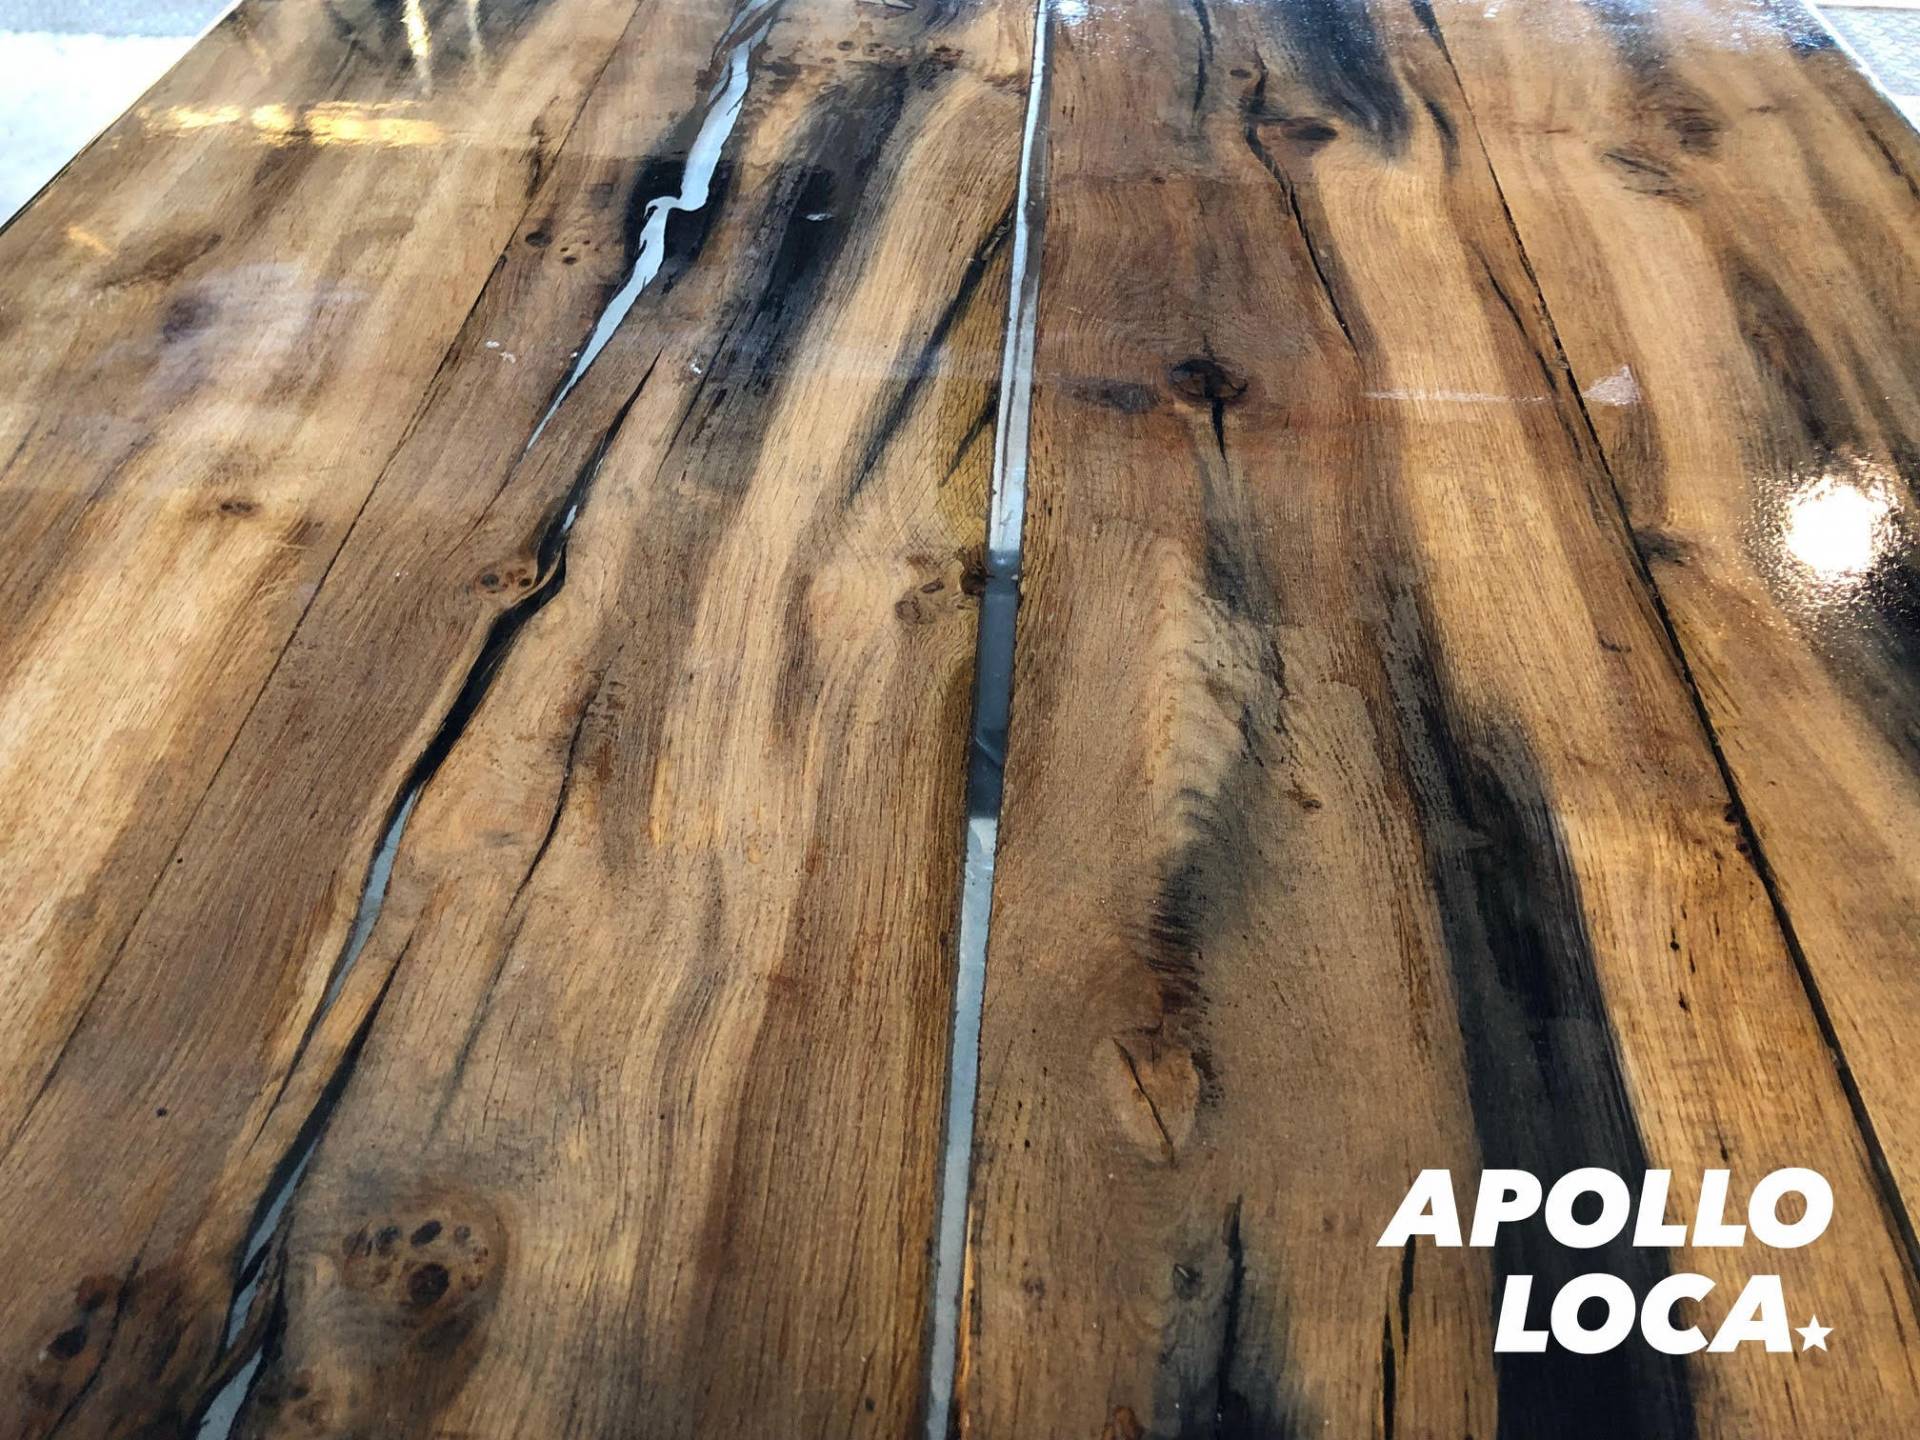 Apollo Loca: epoxy tables